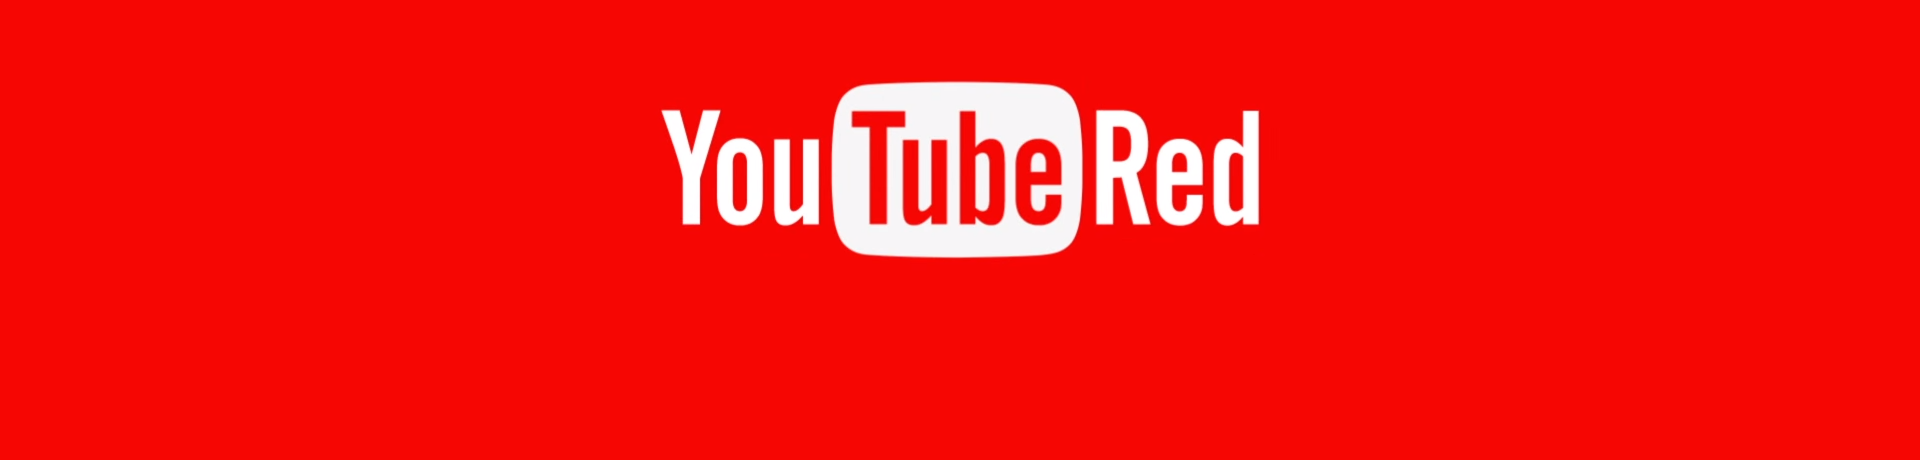 เตรียมปูพรมแดงต้อนรับ YouTube Red Originals หนังที่มีเฉพาะใน YouTube Red เท่านั้น